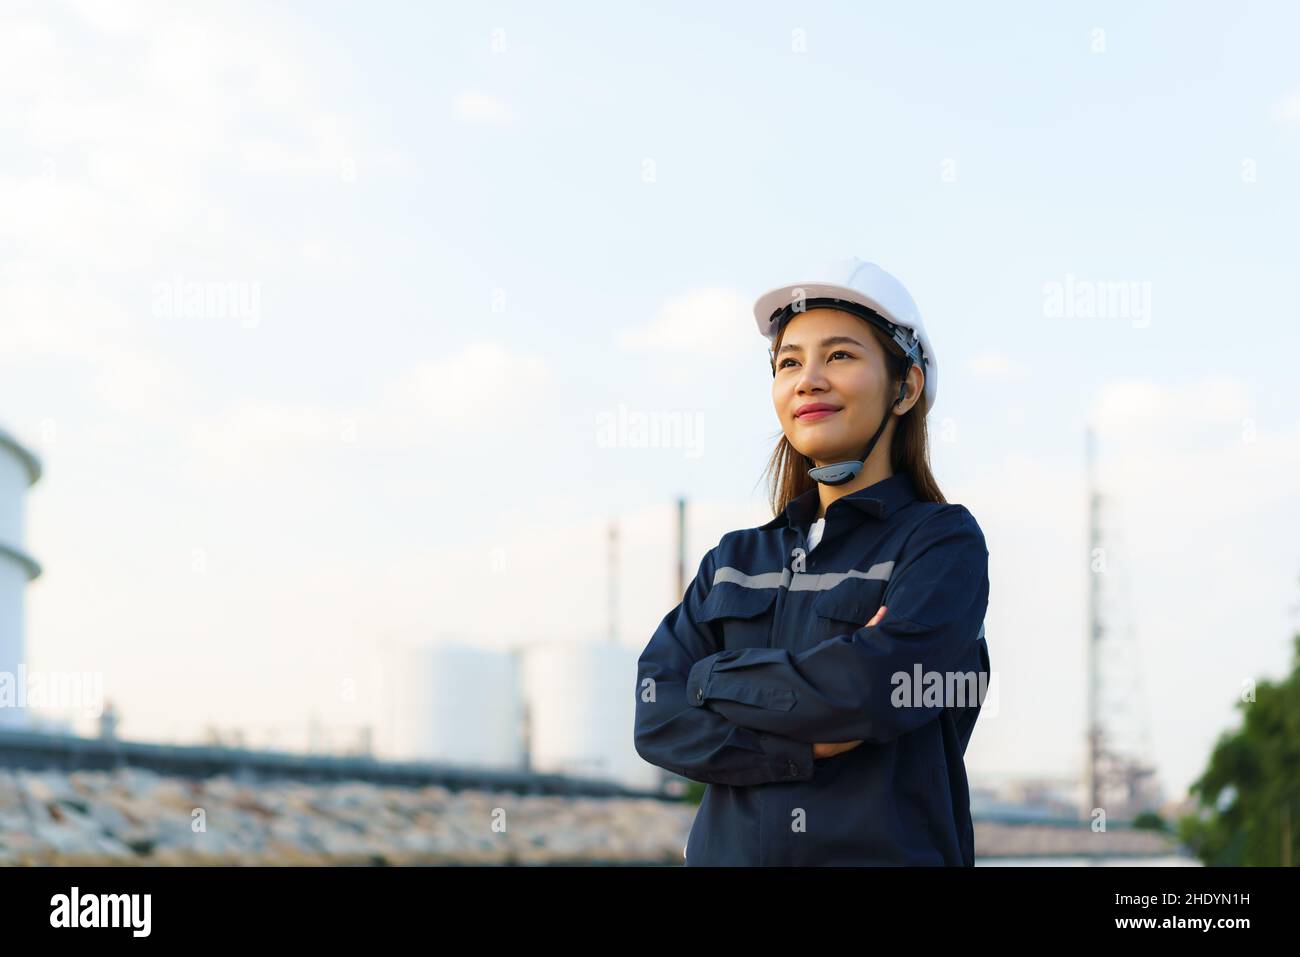 Asiatische Frau Ingenieur Arm gekreuzt und lächeln mit zuversichtlich, die Zukunft mit Ölraffinerie Fabrik im Hintergrund. Stockfoto